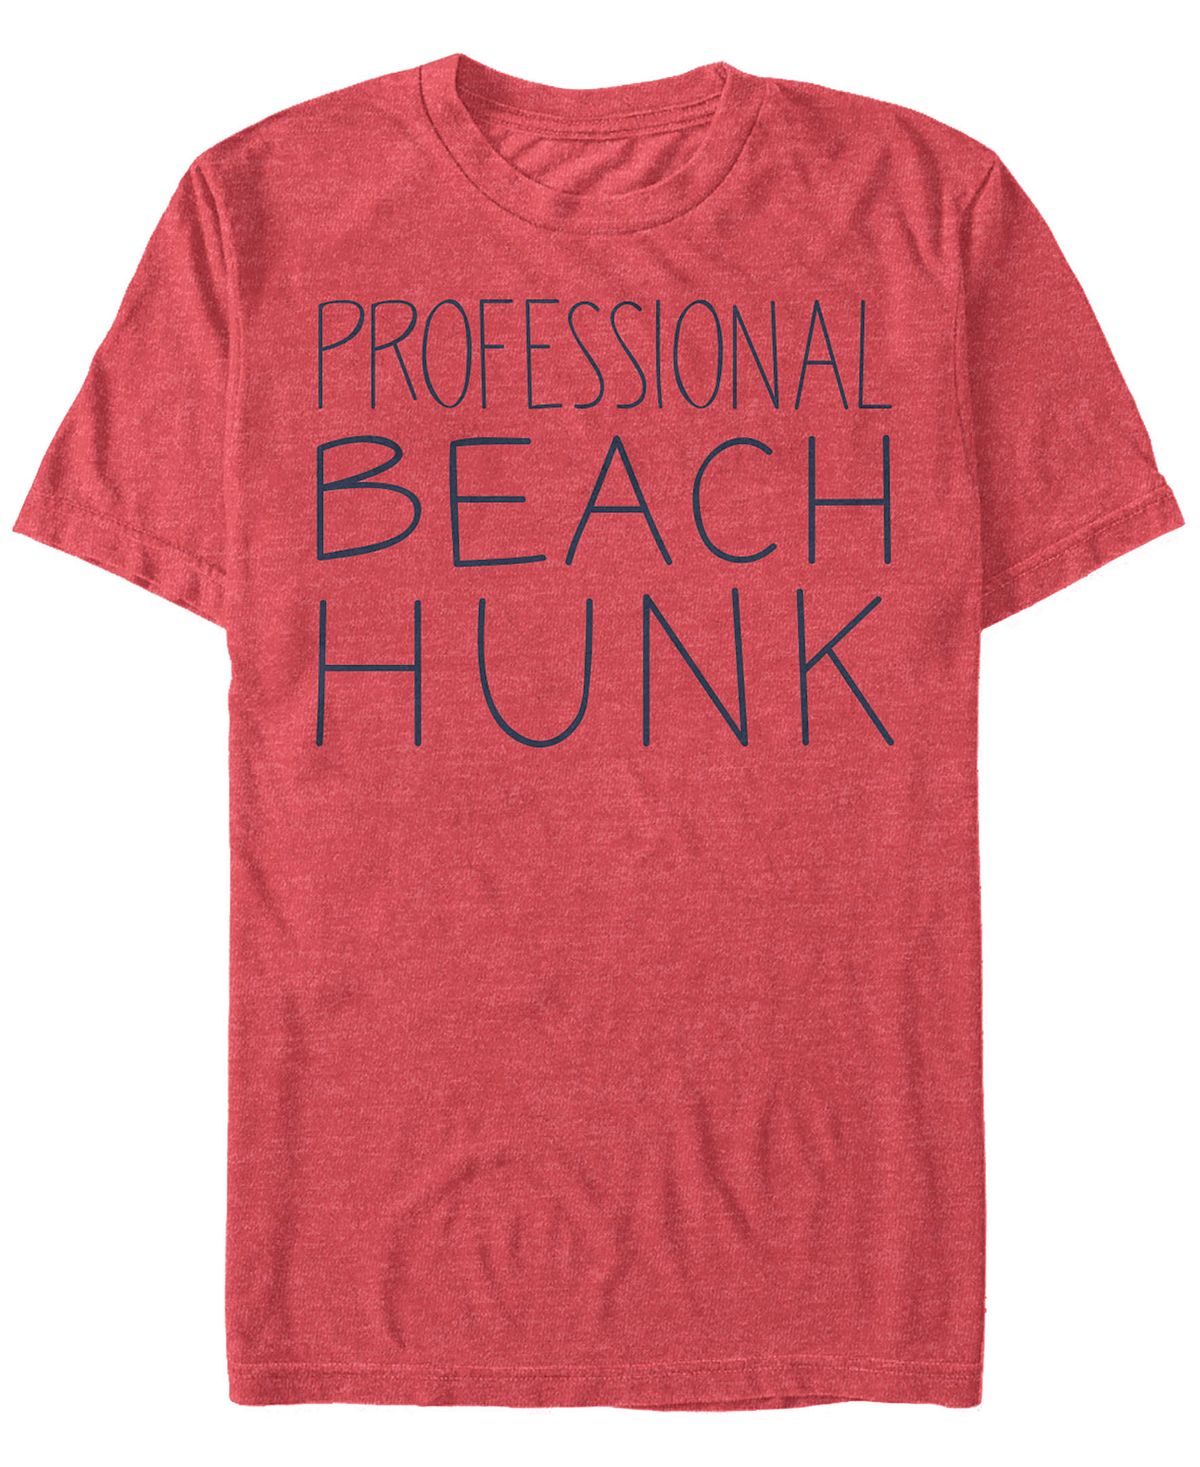 Мужская футболка steven universe professional beach hunk с коротким рукавом Fifth Sun, красный bratz школа крутых девчонок 2